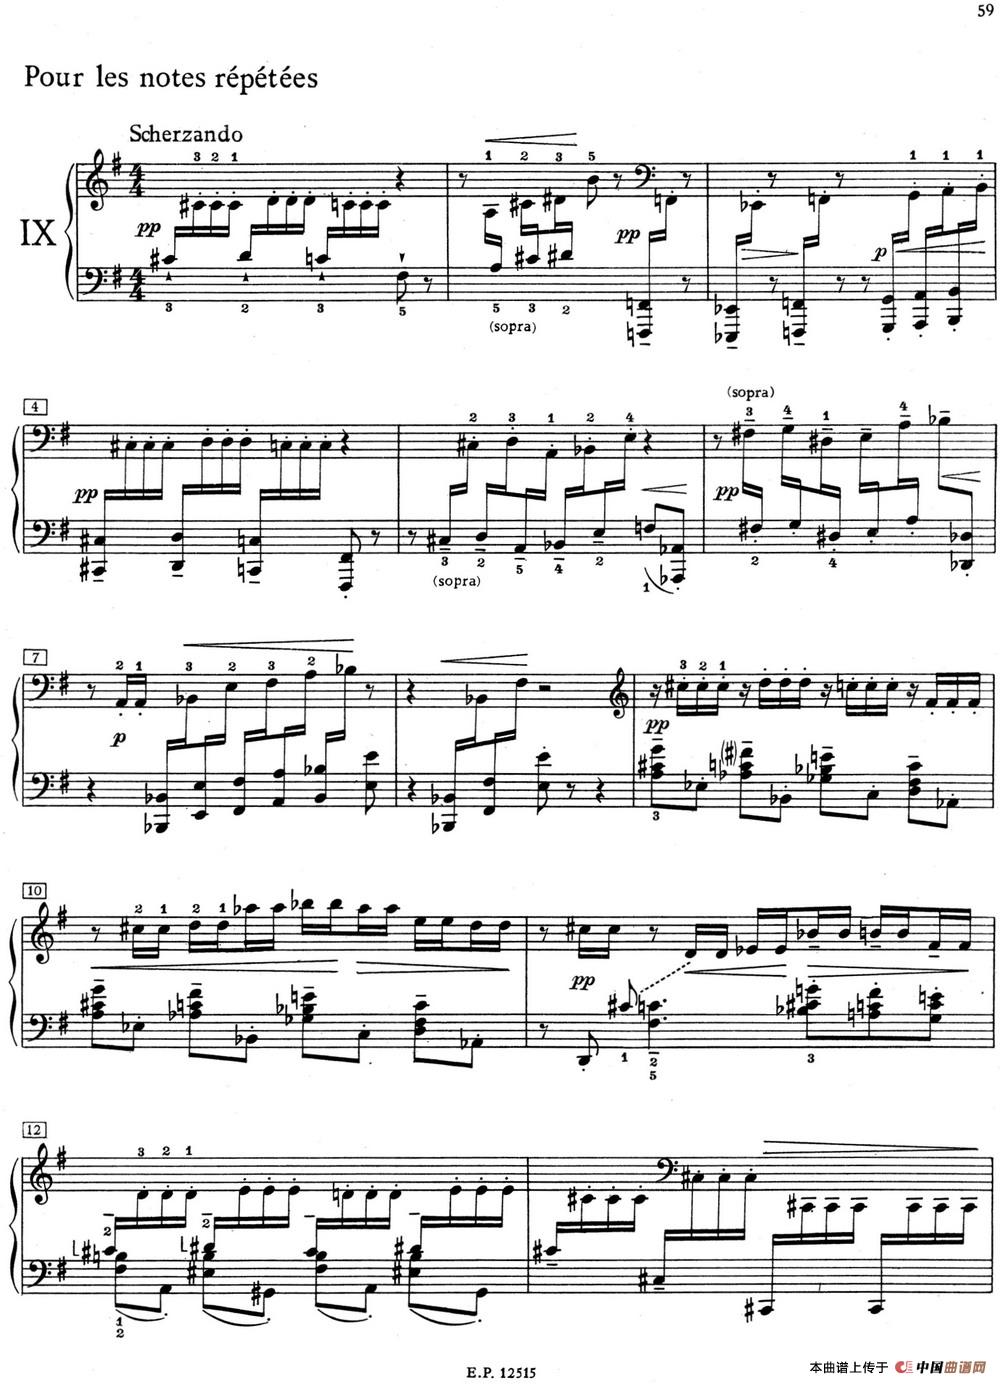 德彪西12首钢琴练习曲（9 反复音练习v1.0 notes répétées）(1)_9 Pour les notes repetees_页面_1.jpg